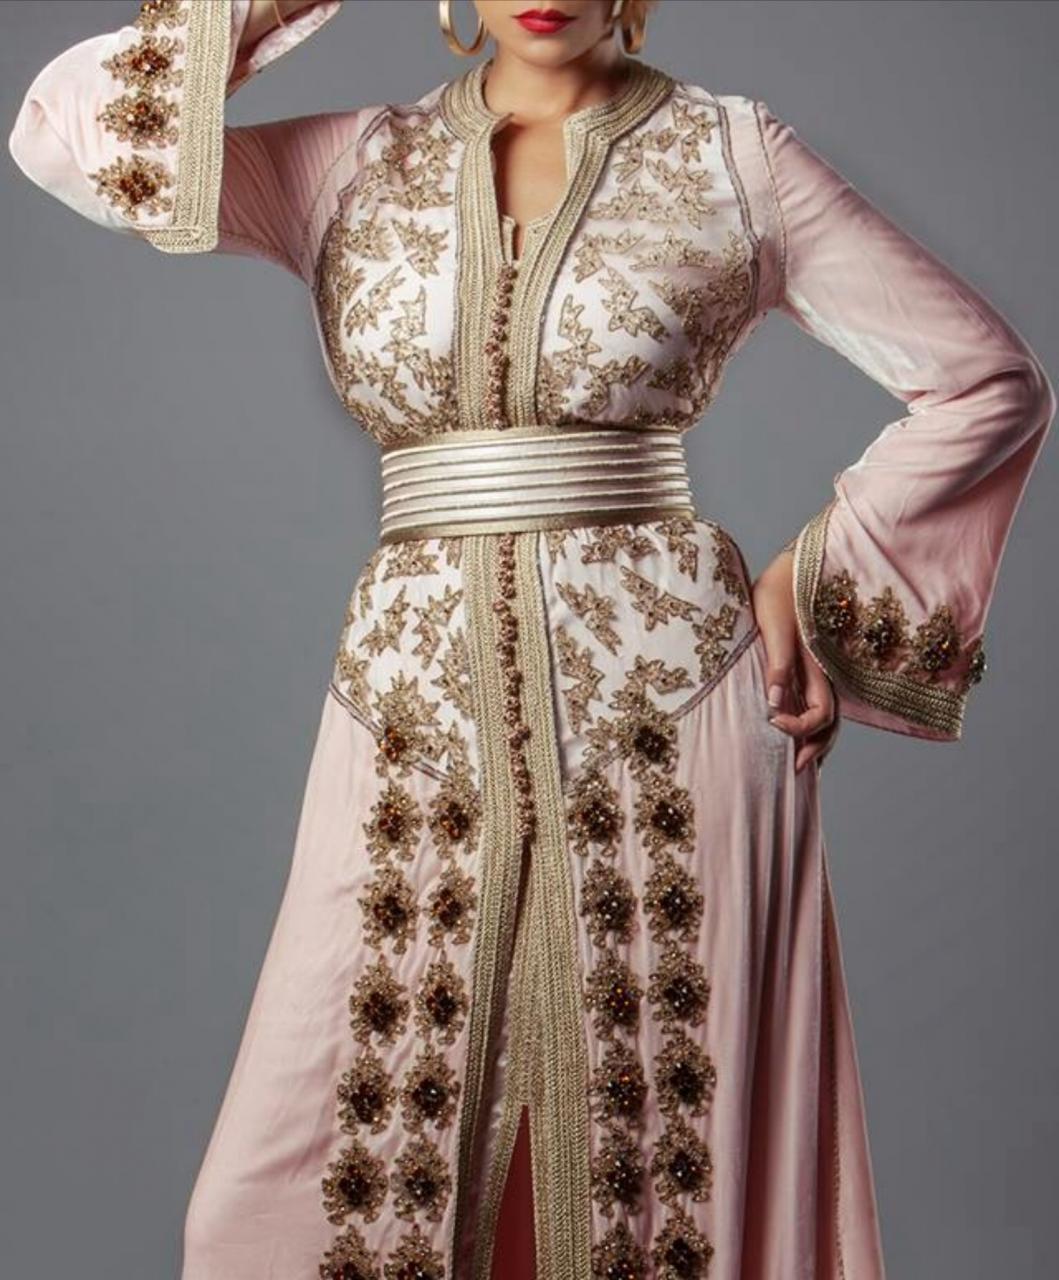 الباس التقليدي المغربي , القفطان احد رموز الثقافه لشعب المغرب - طقطقه